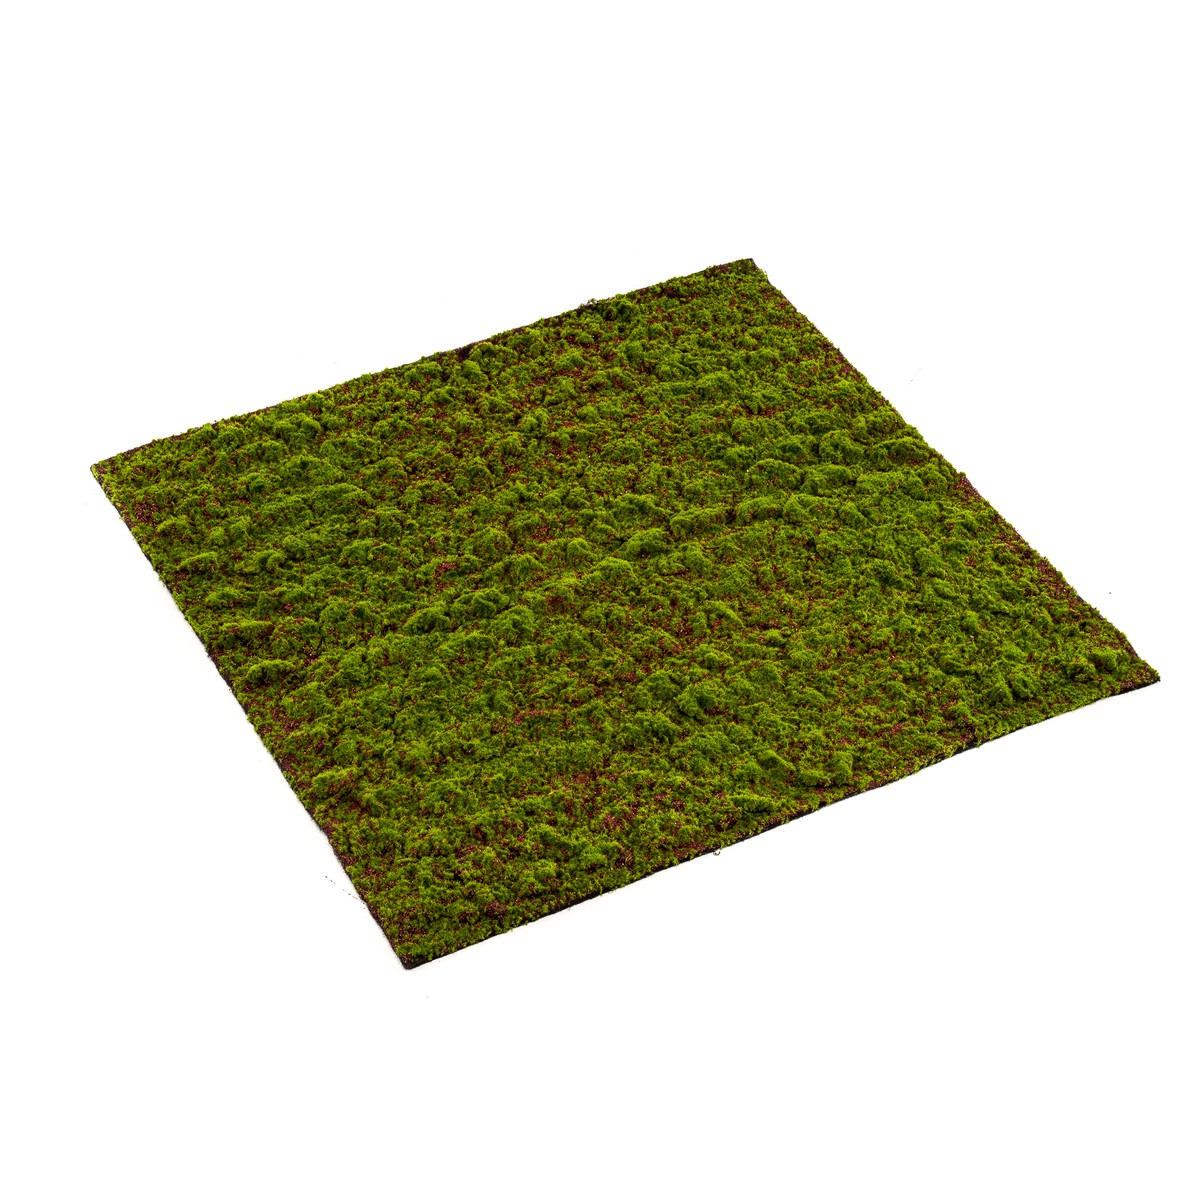 Schilliger Sélection  Mousse Grimmia en plaque artificielle  100x100cm